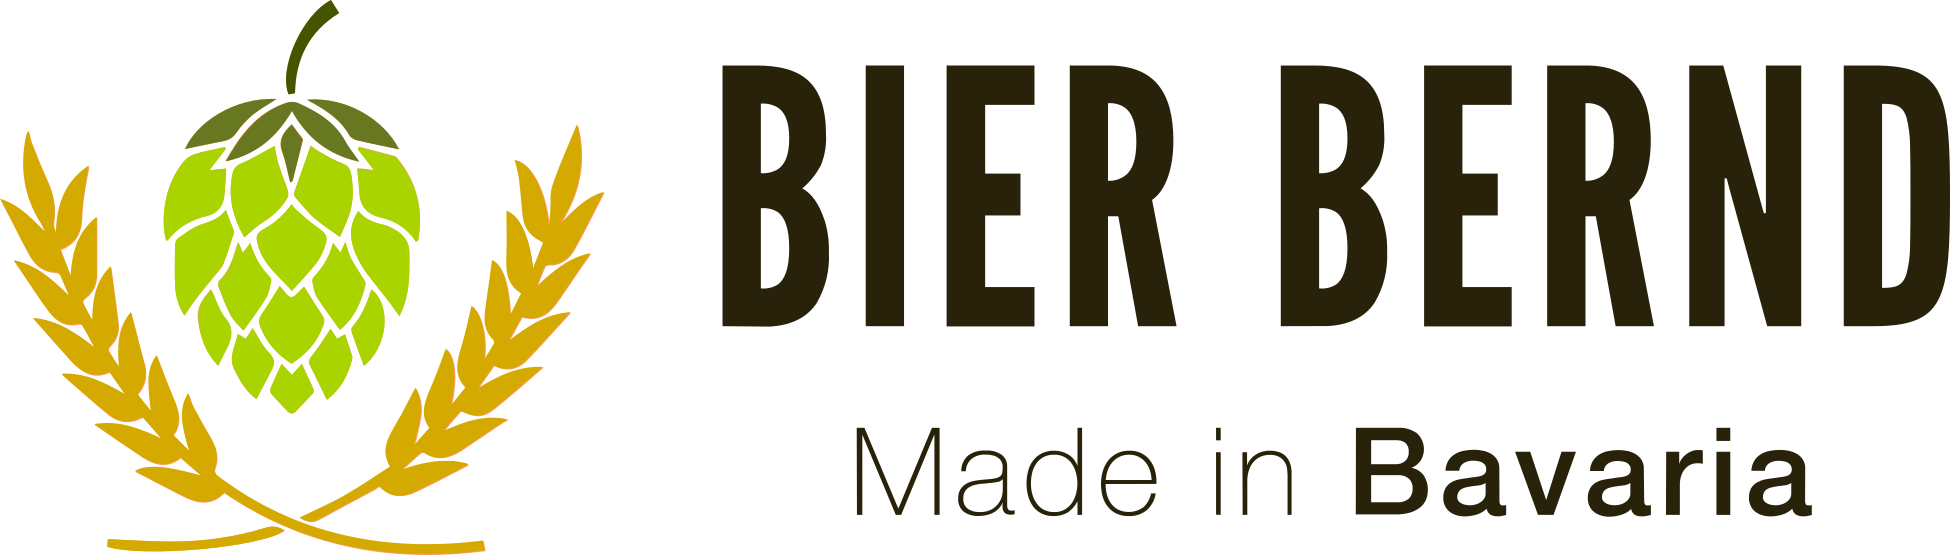 Bierbernd Logo